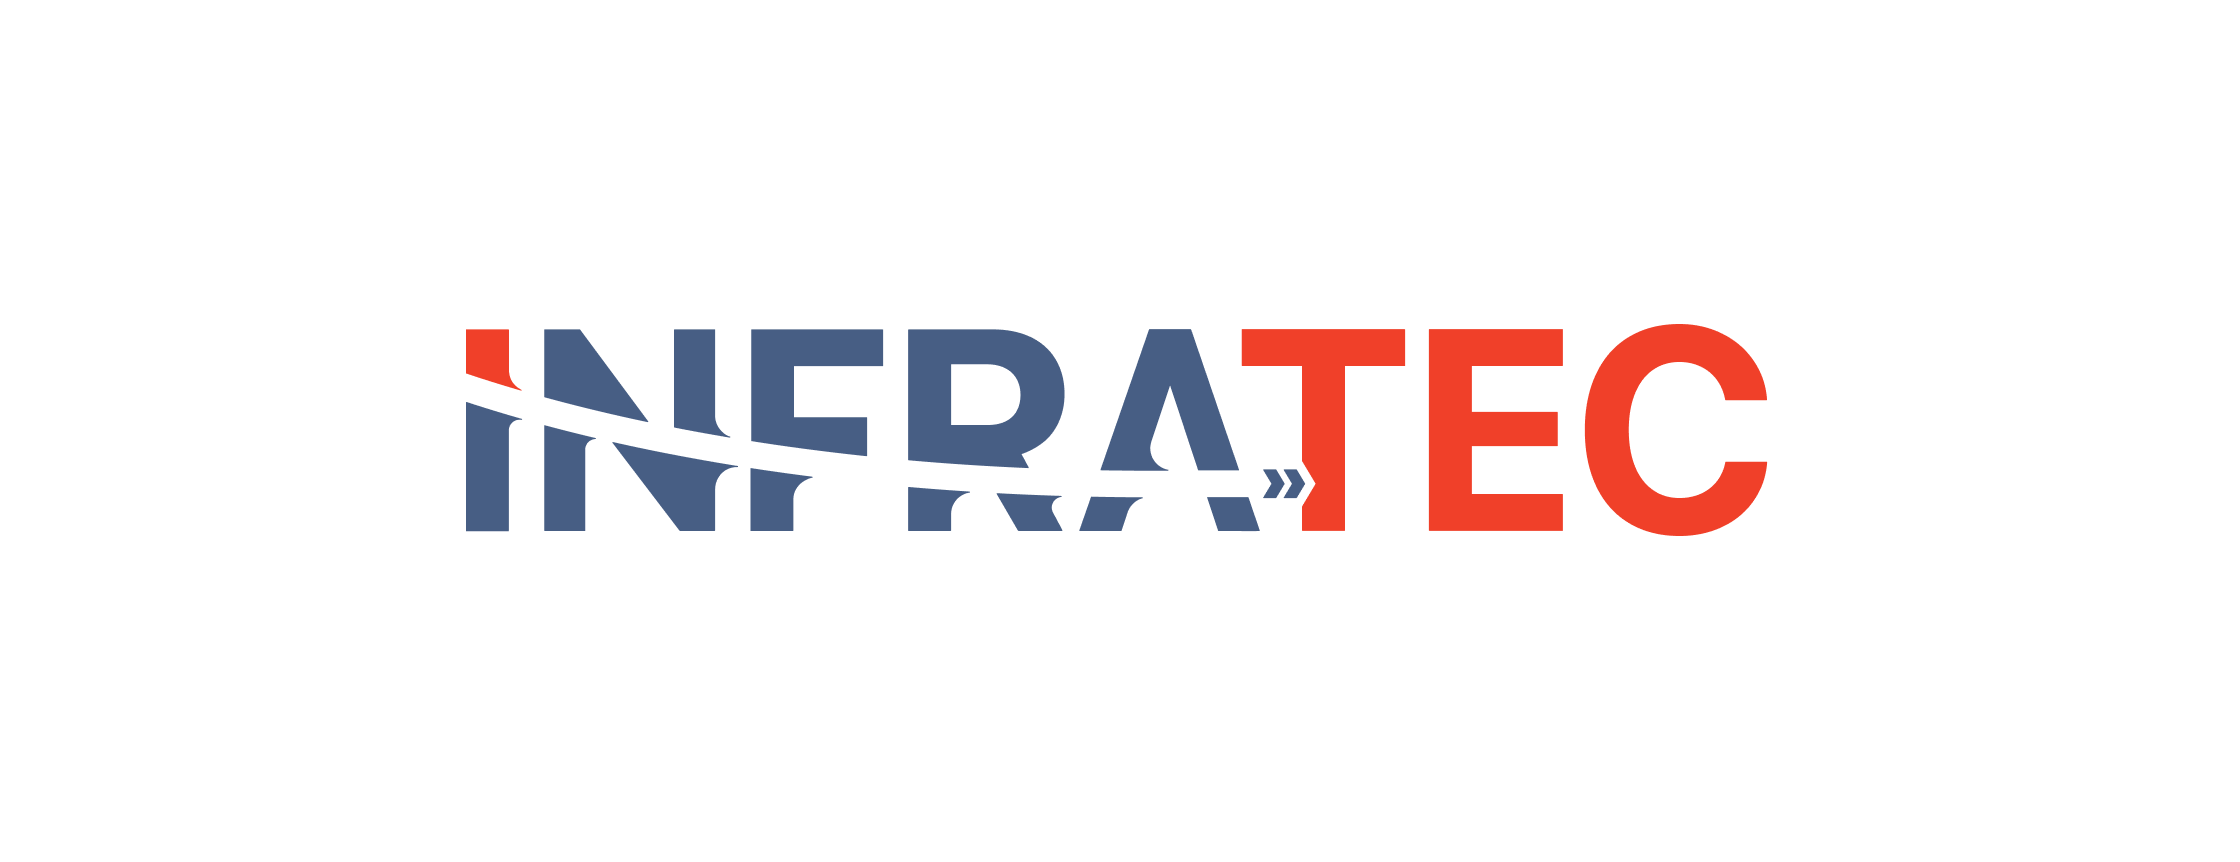 Criação de logotipo da Infratec - Por Alerta!design